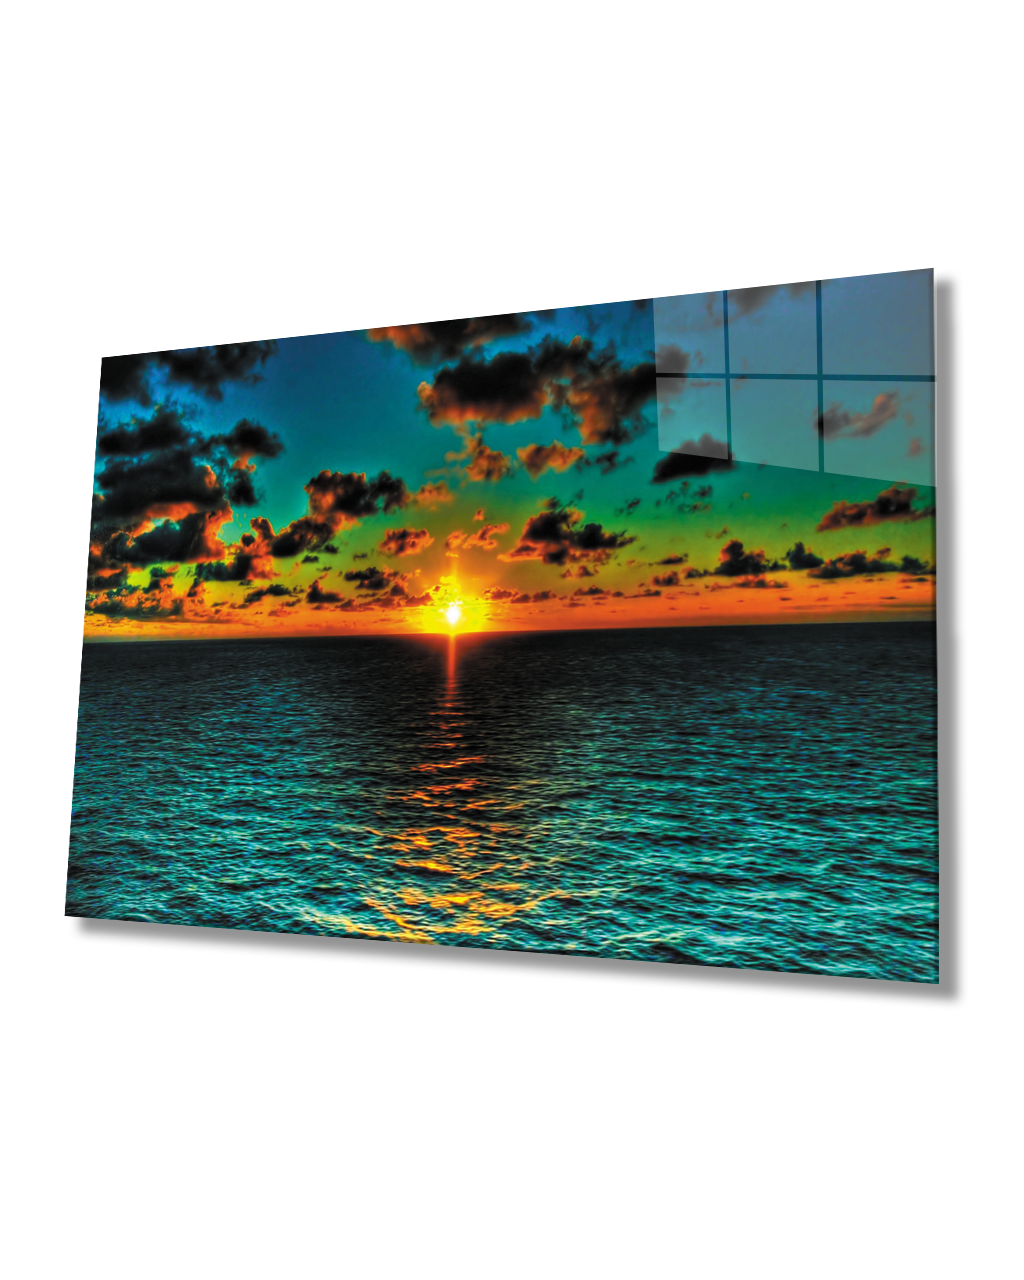 Gün Batımı Deniz Cam Tablo   4mm Dayanıklı Temperli Cam Sunset Sea Glass Table 4mm Durable Tempered Glass